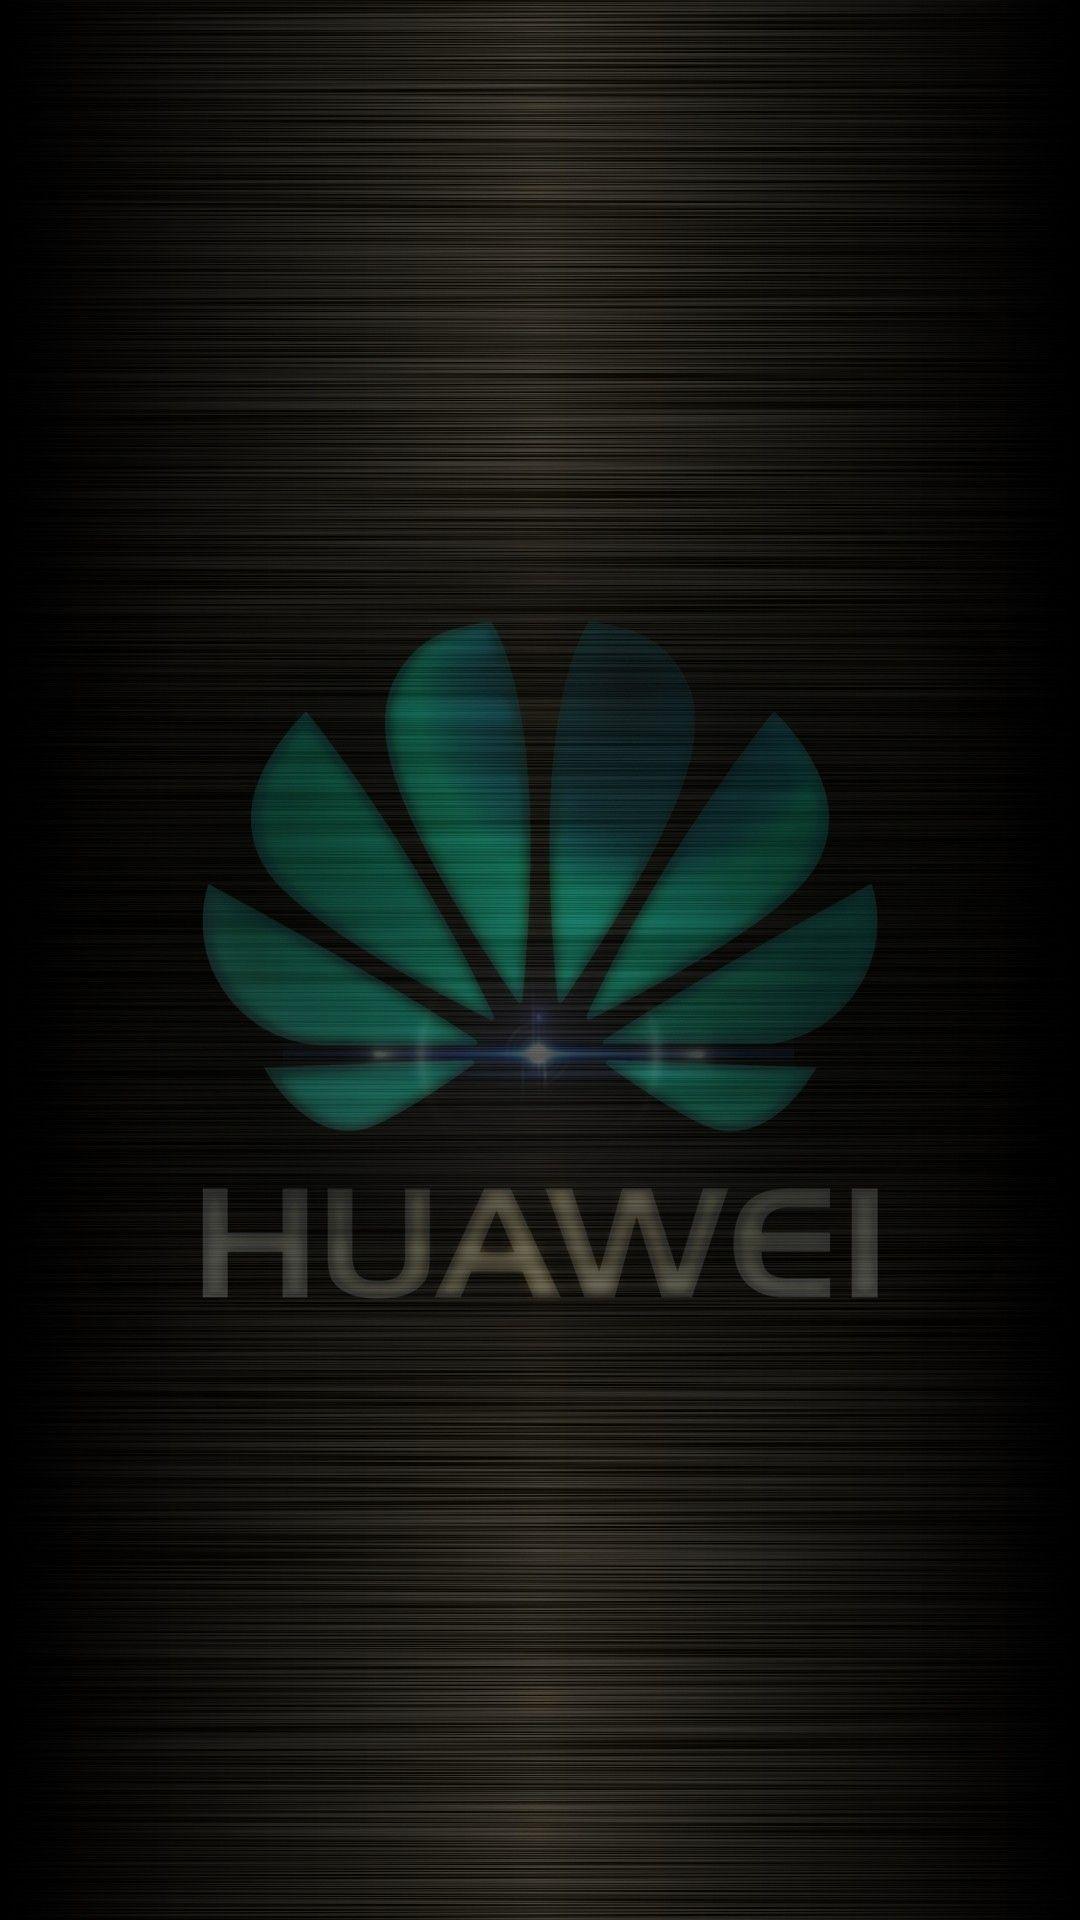 Huawei Wallpaper - [1080x1920]